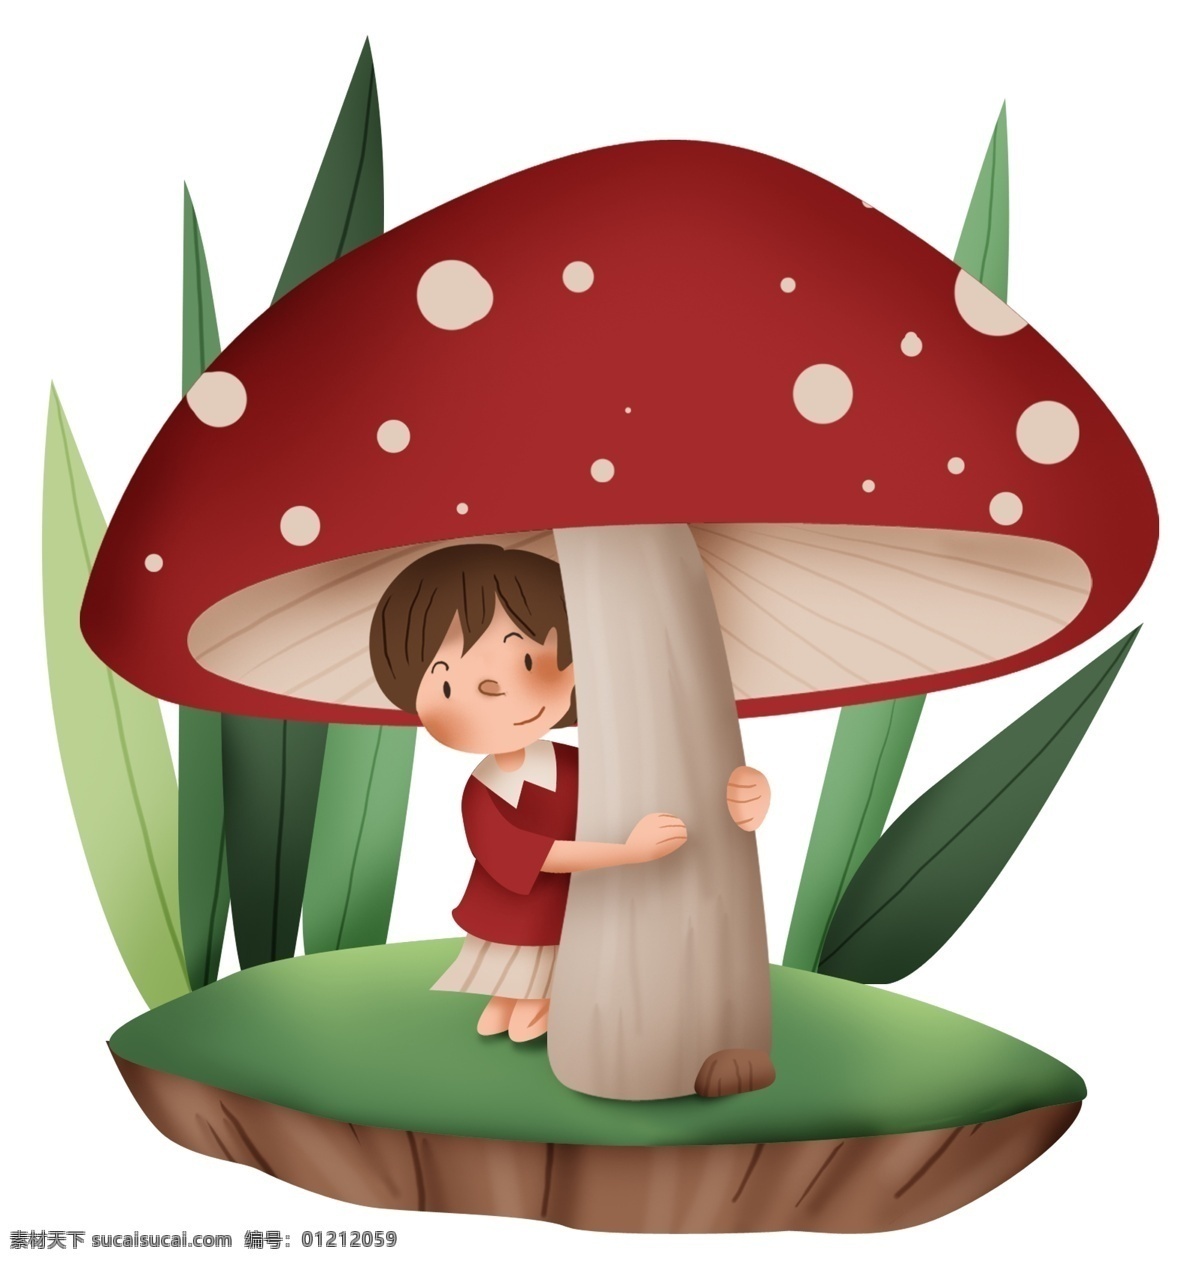 蘑菇 卡通 人物 躲雨 小岛 树叶 卡通元素 分层